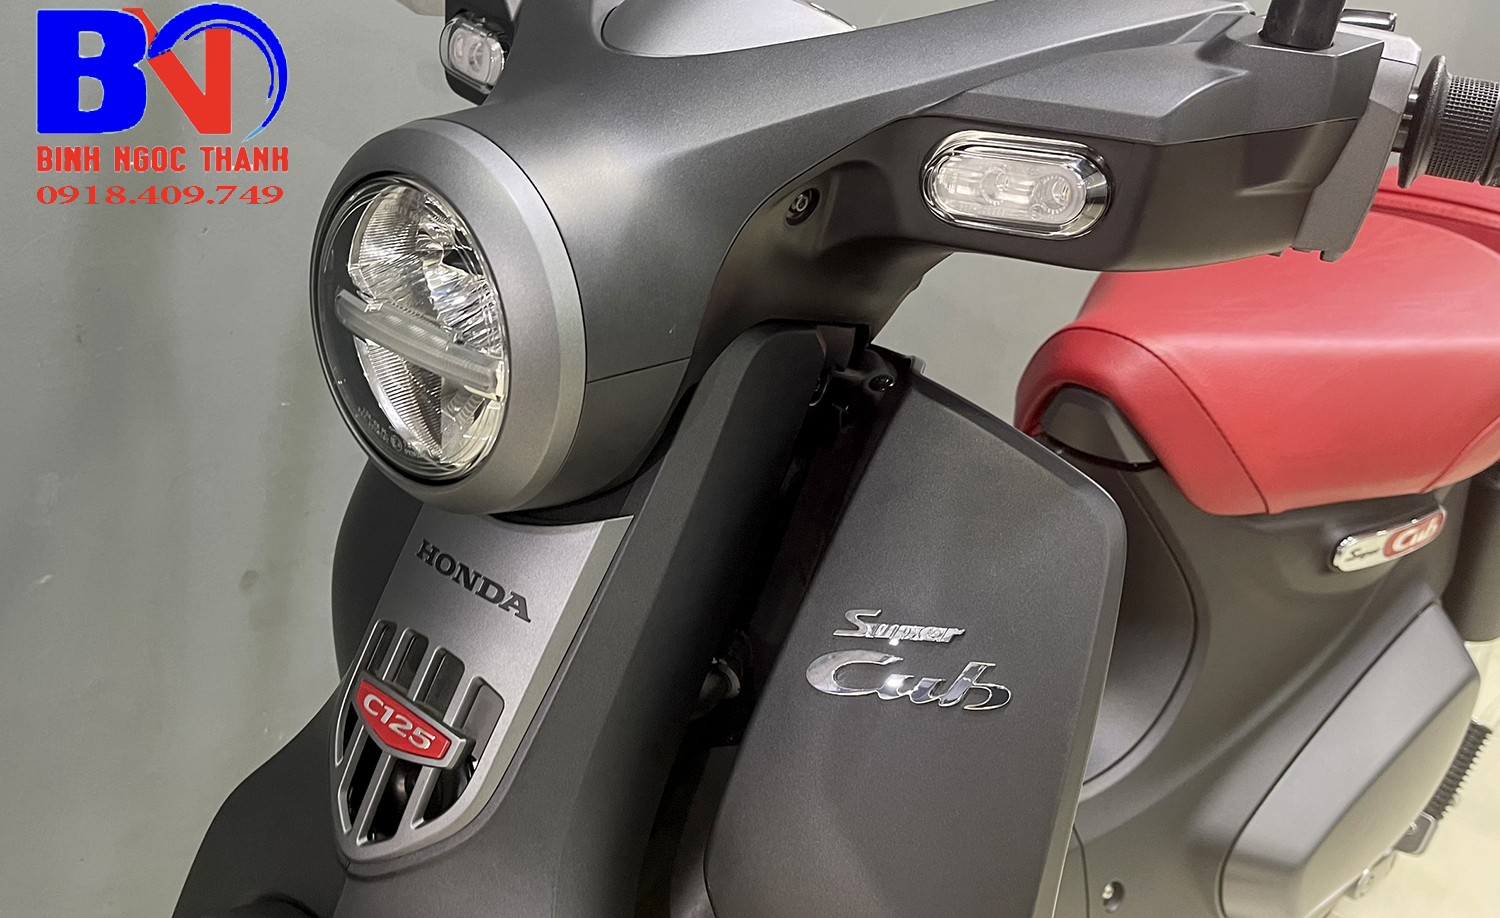 Honda super cub c125 2022 đen nhám 